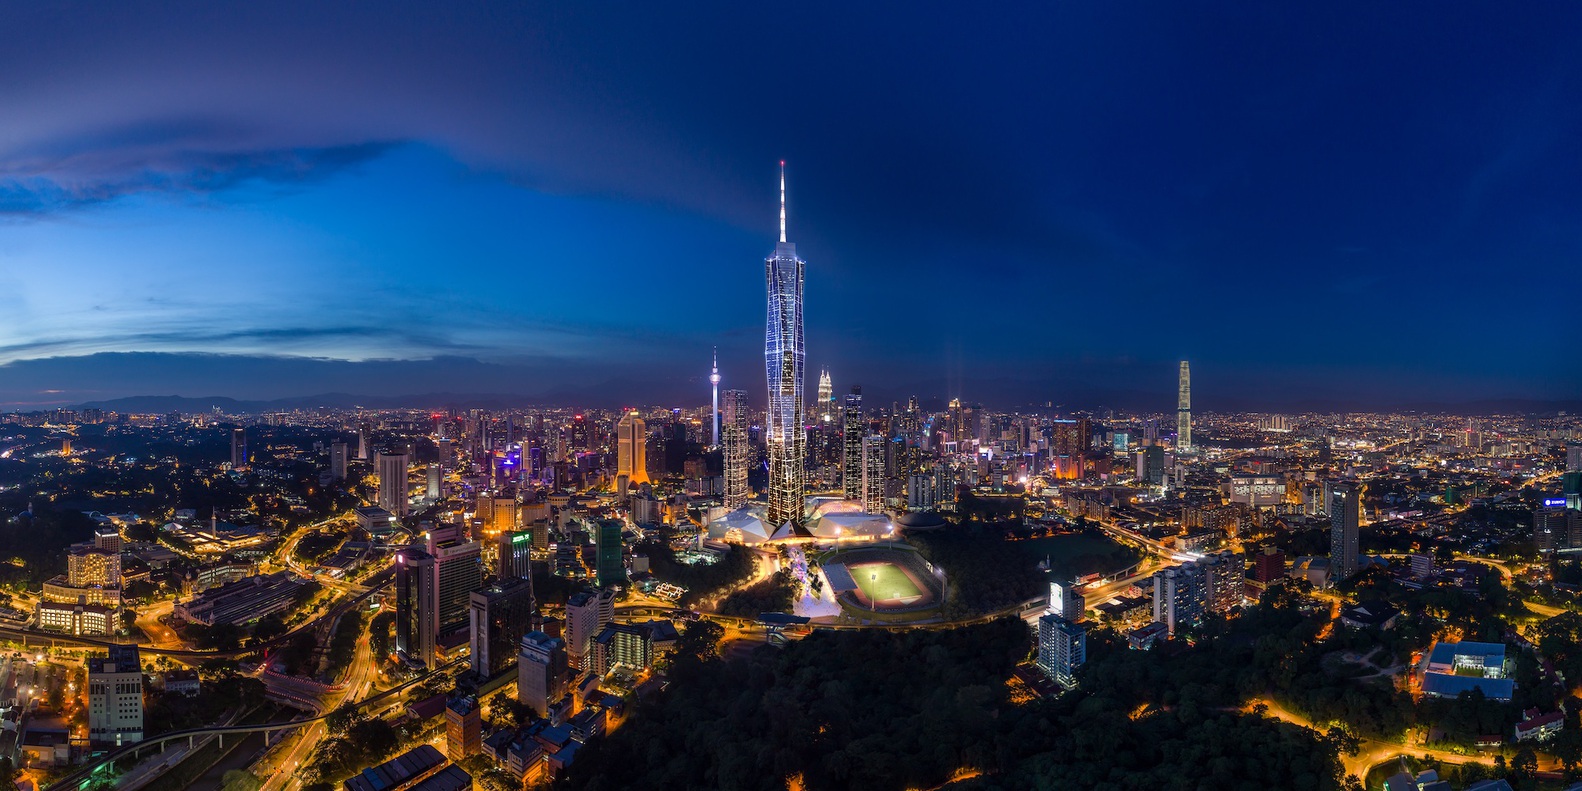 tòa tháp cao thứ 2 thế giới, tháp merdeka, malaysia, tòa nhà merdeka 118